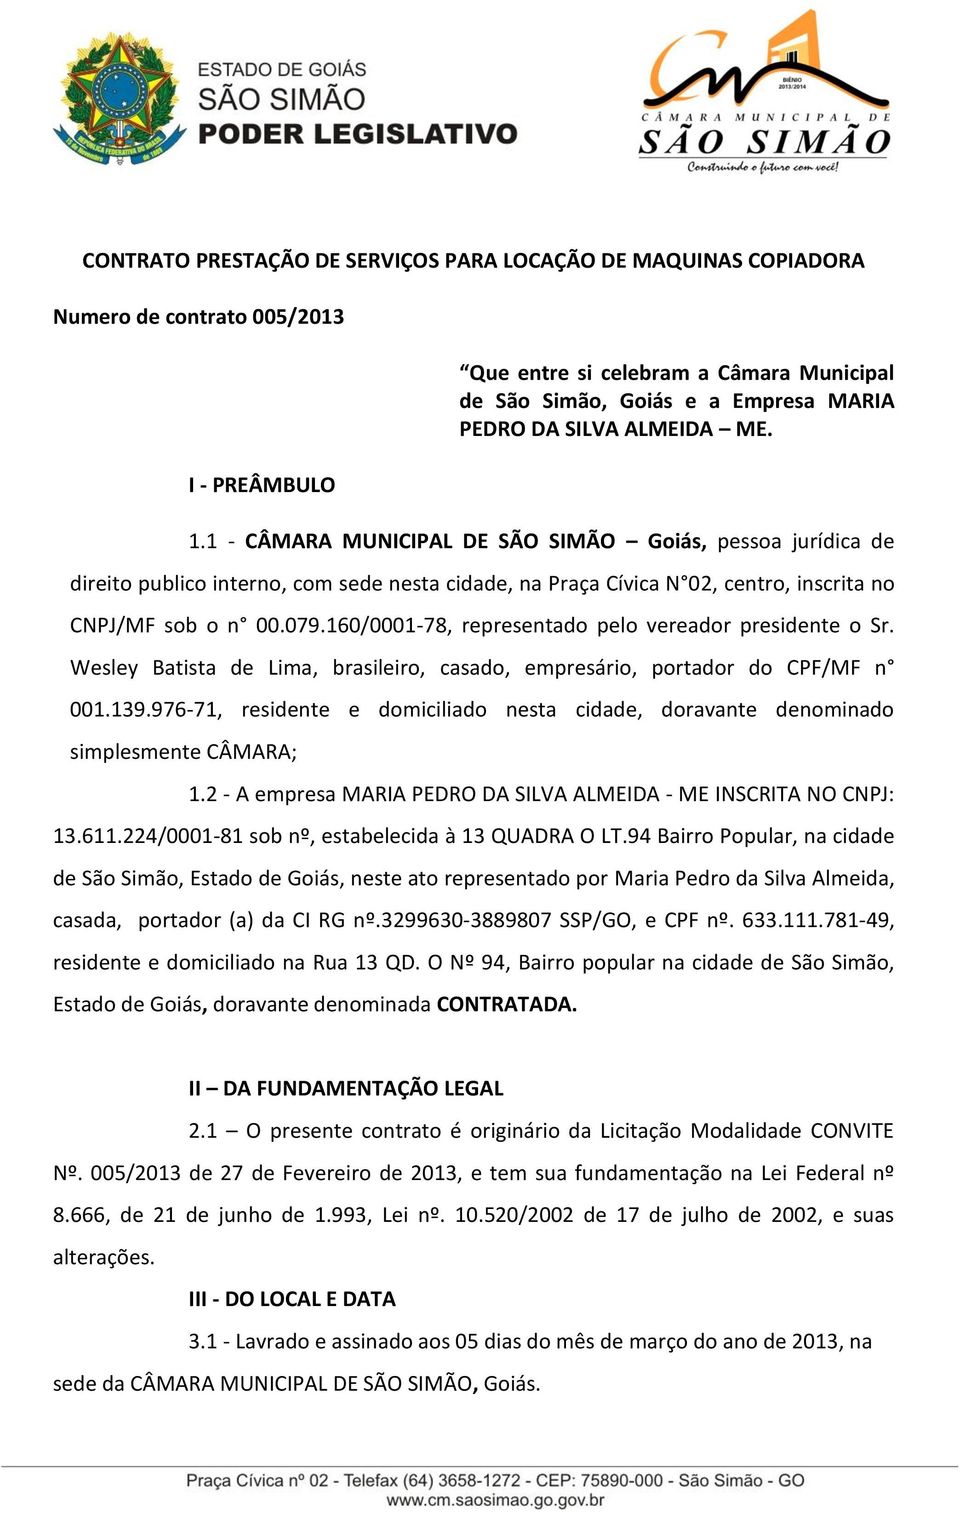 160/0001-78, representado pelo vereador presidente o Sr. Wesley Batista de Lima, brasileiro, casado, empresário, portador do CPF/MF n 001.139.